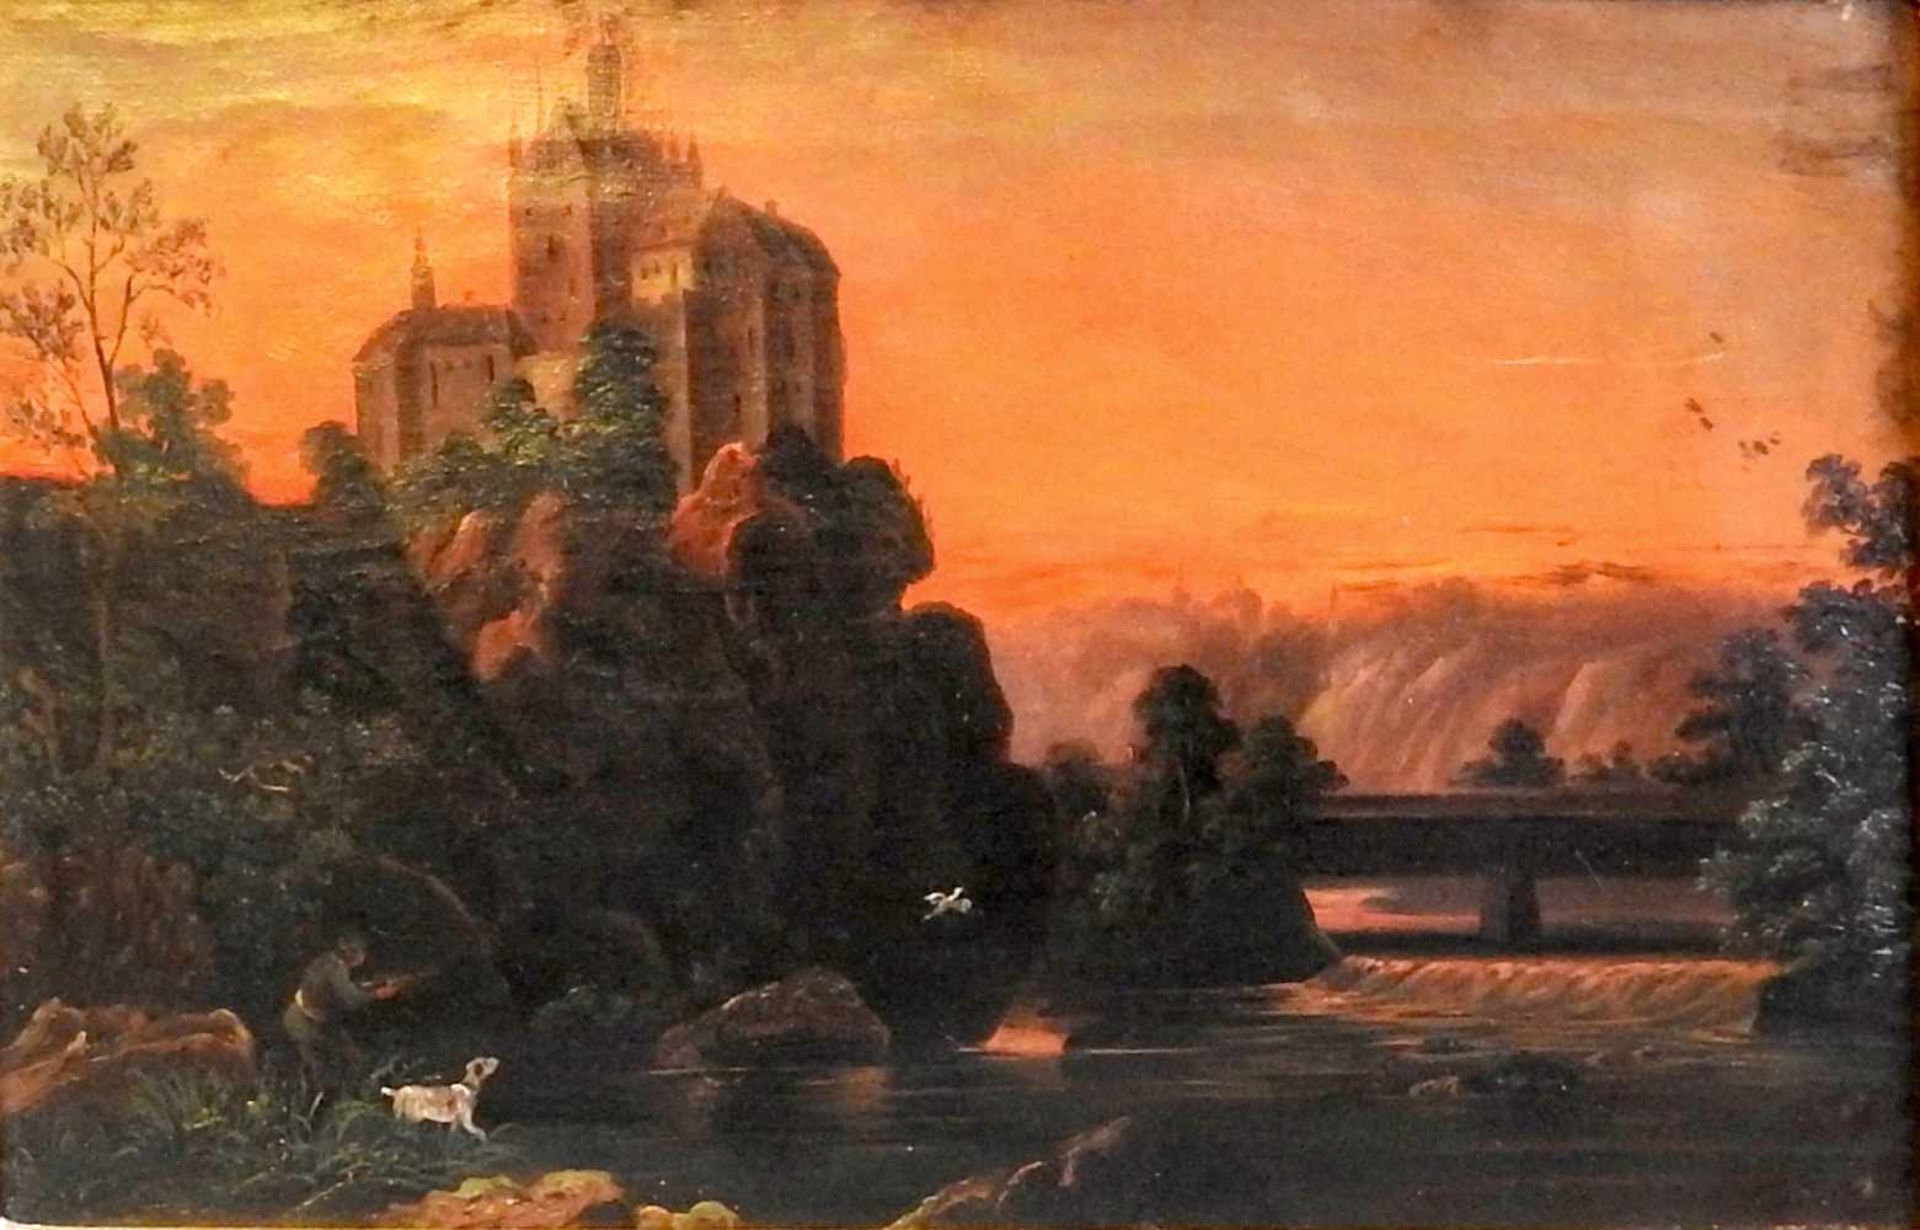 Landschaftsdarstellung einer BurgÖl/Leinwand. Das Gemälde zeigt einen Jägersmann de